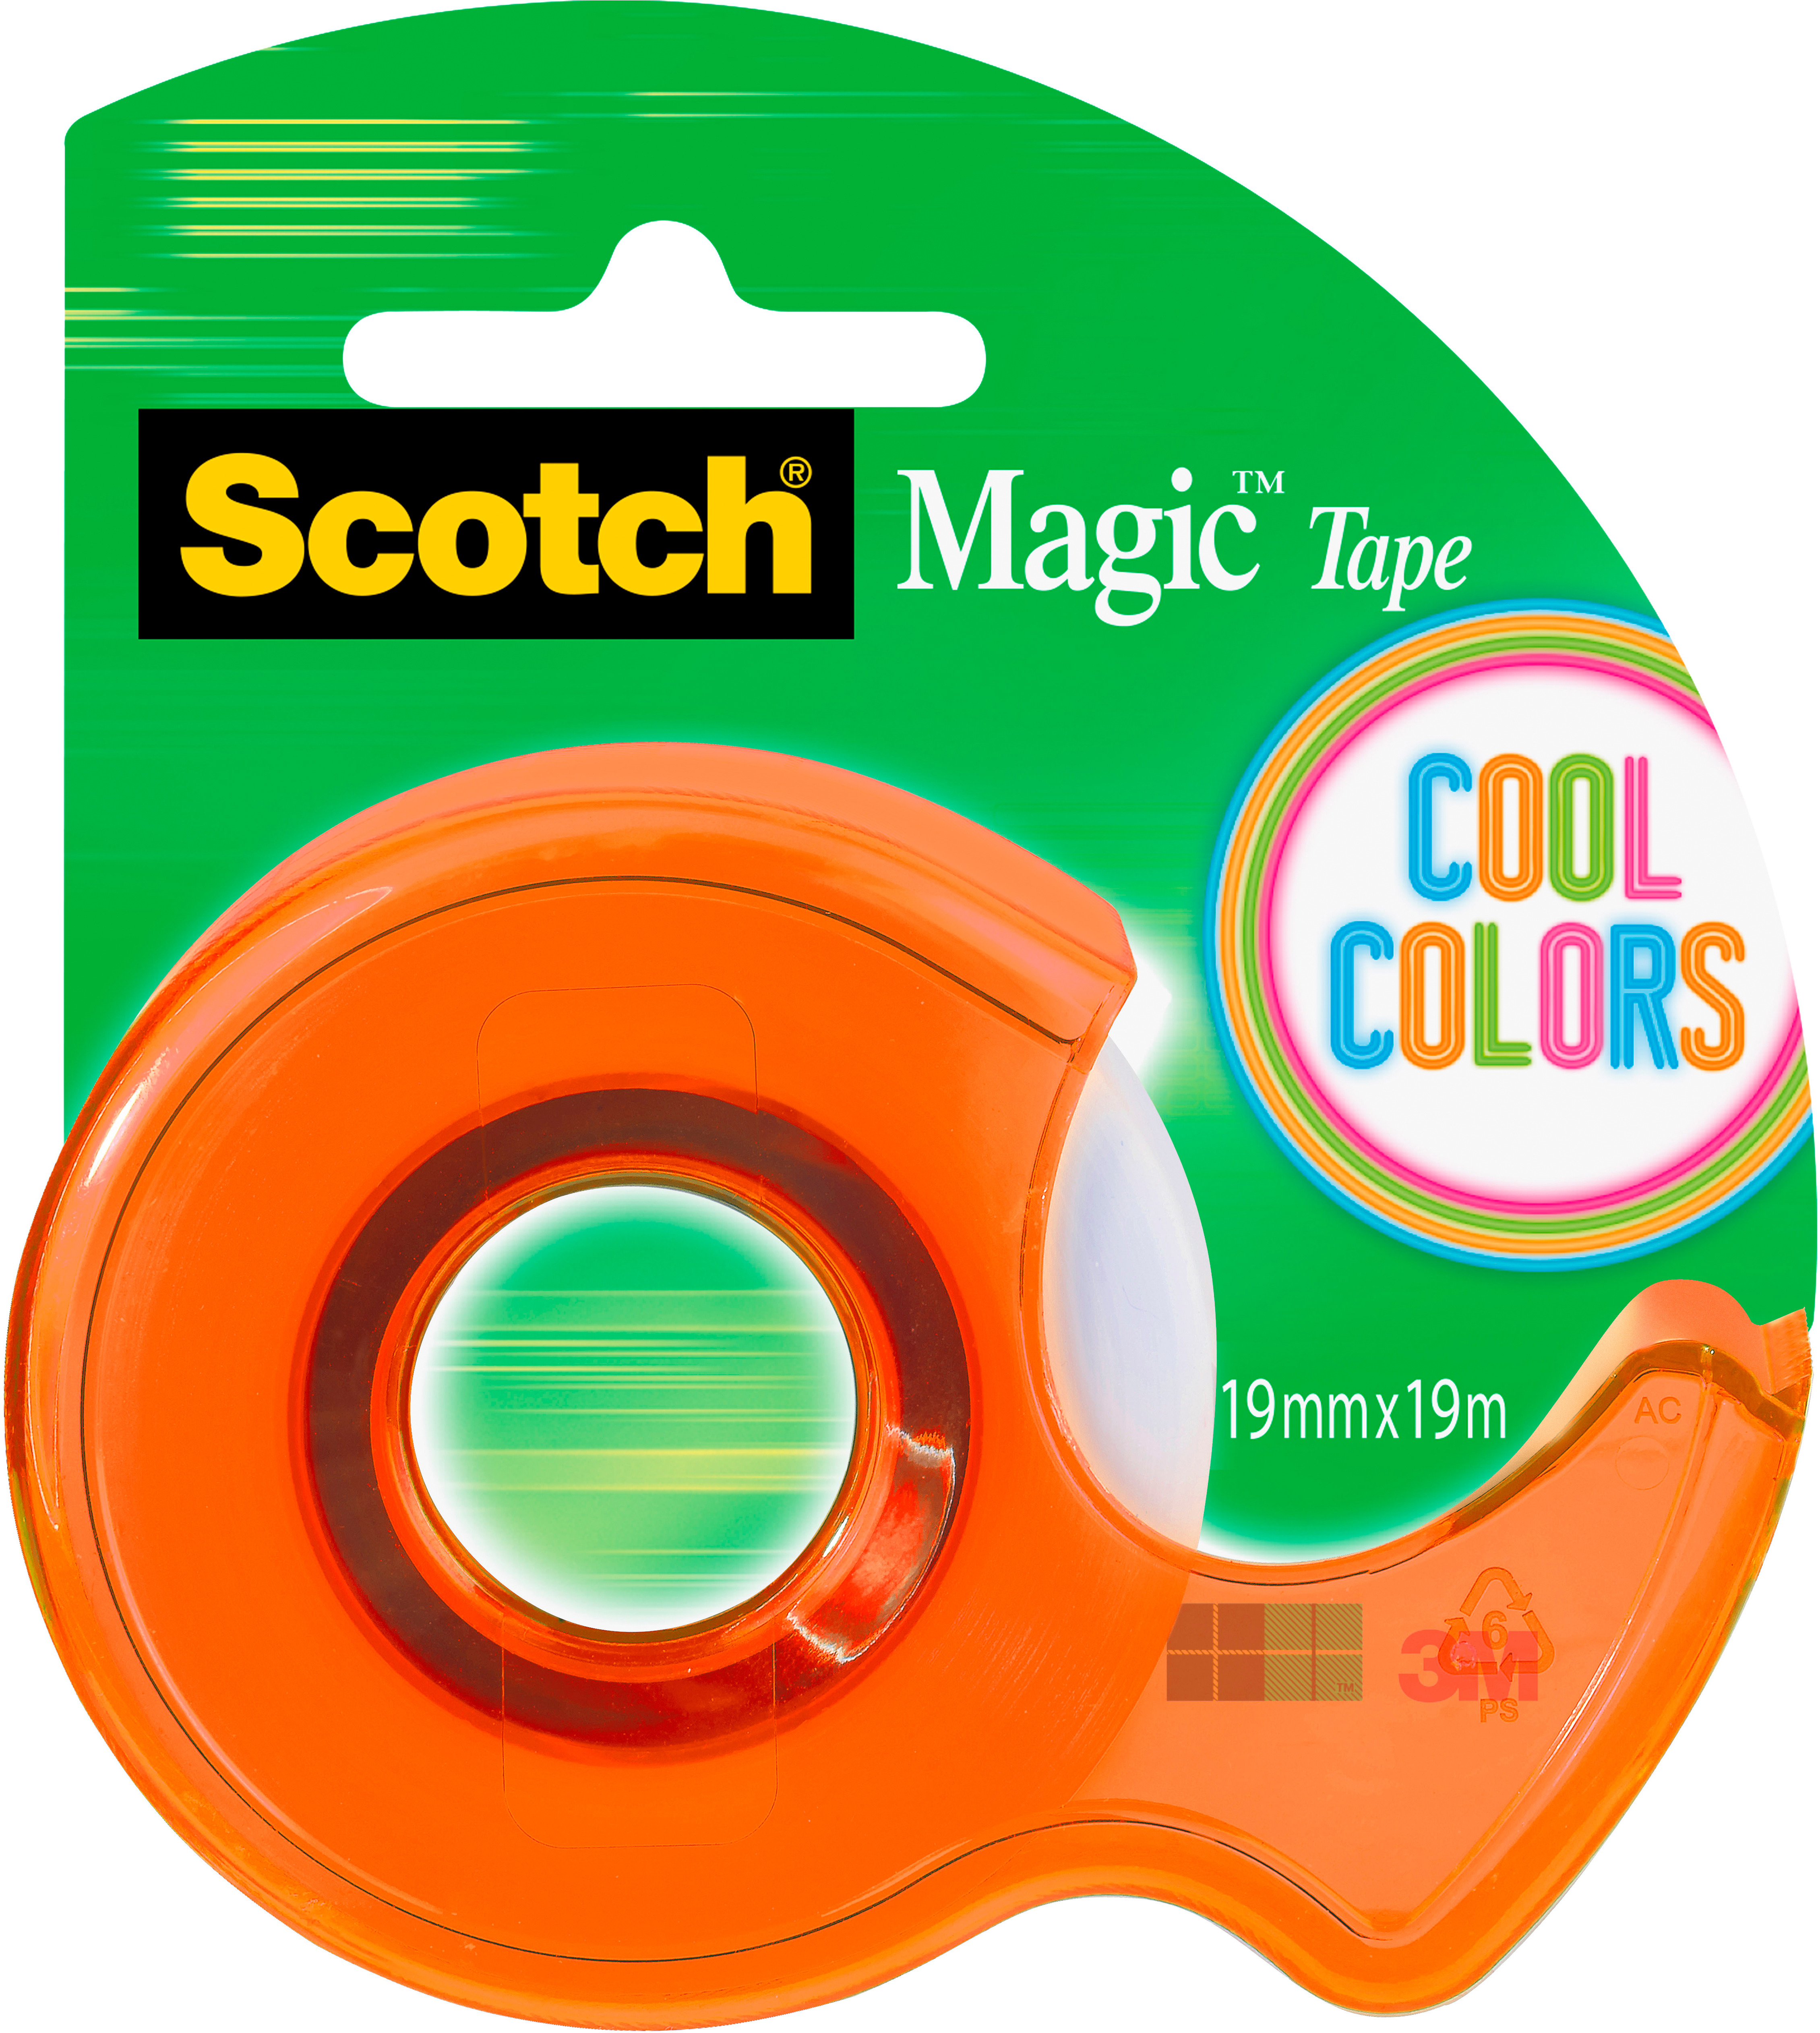 SCOTCH Handaroller "Cool Color" sortiert: gelb, fuchsia, türkis, hellgrün<br>